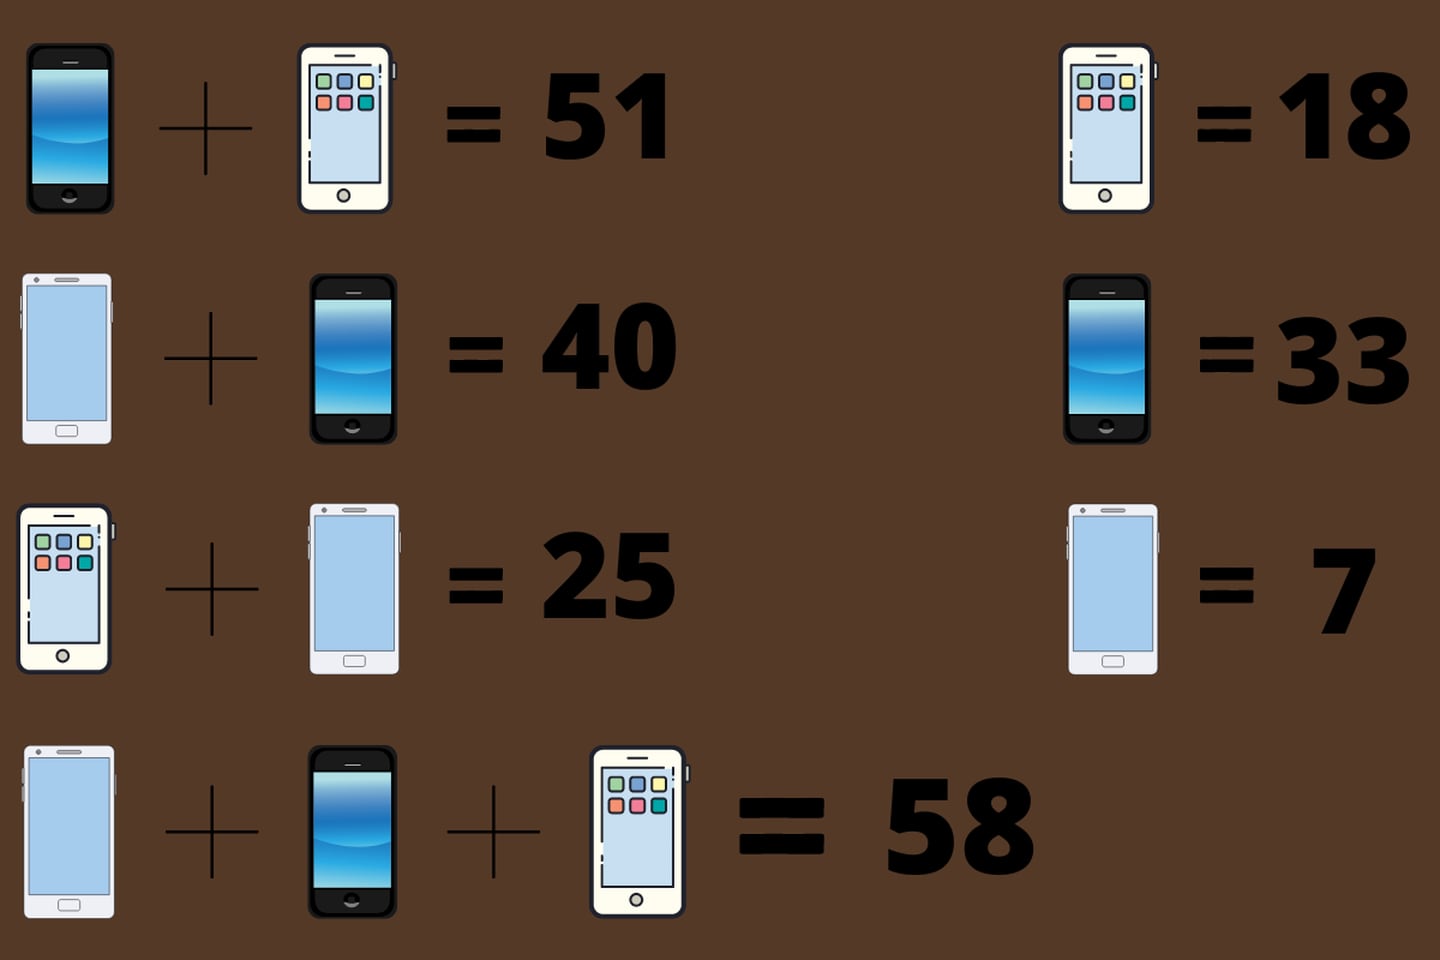 En este test visual hay un desafío matemático, donde cada celular tiene un valor incógnito que se debe encontrar mediante sumas.